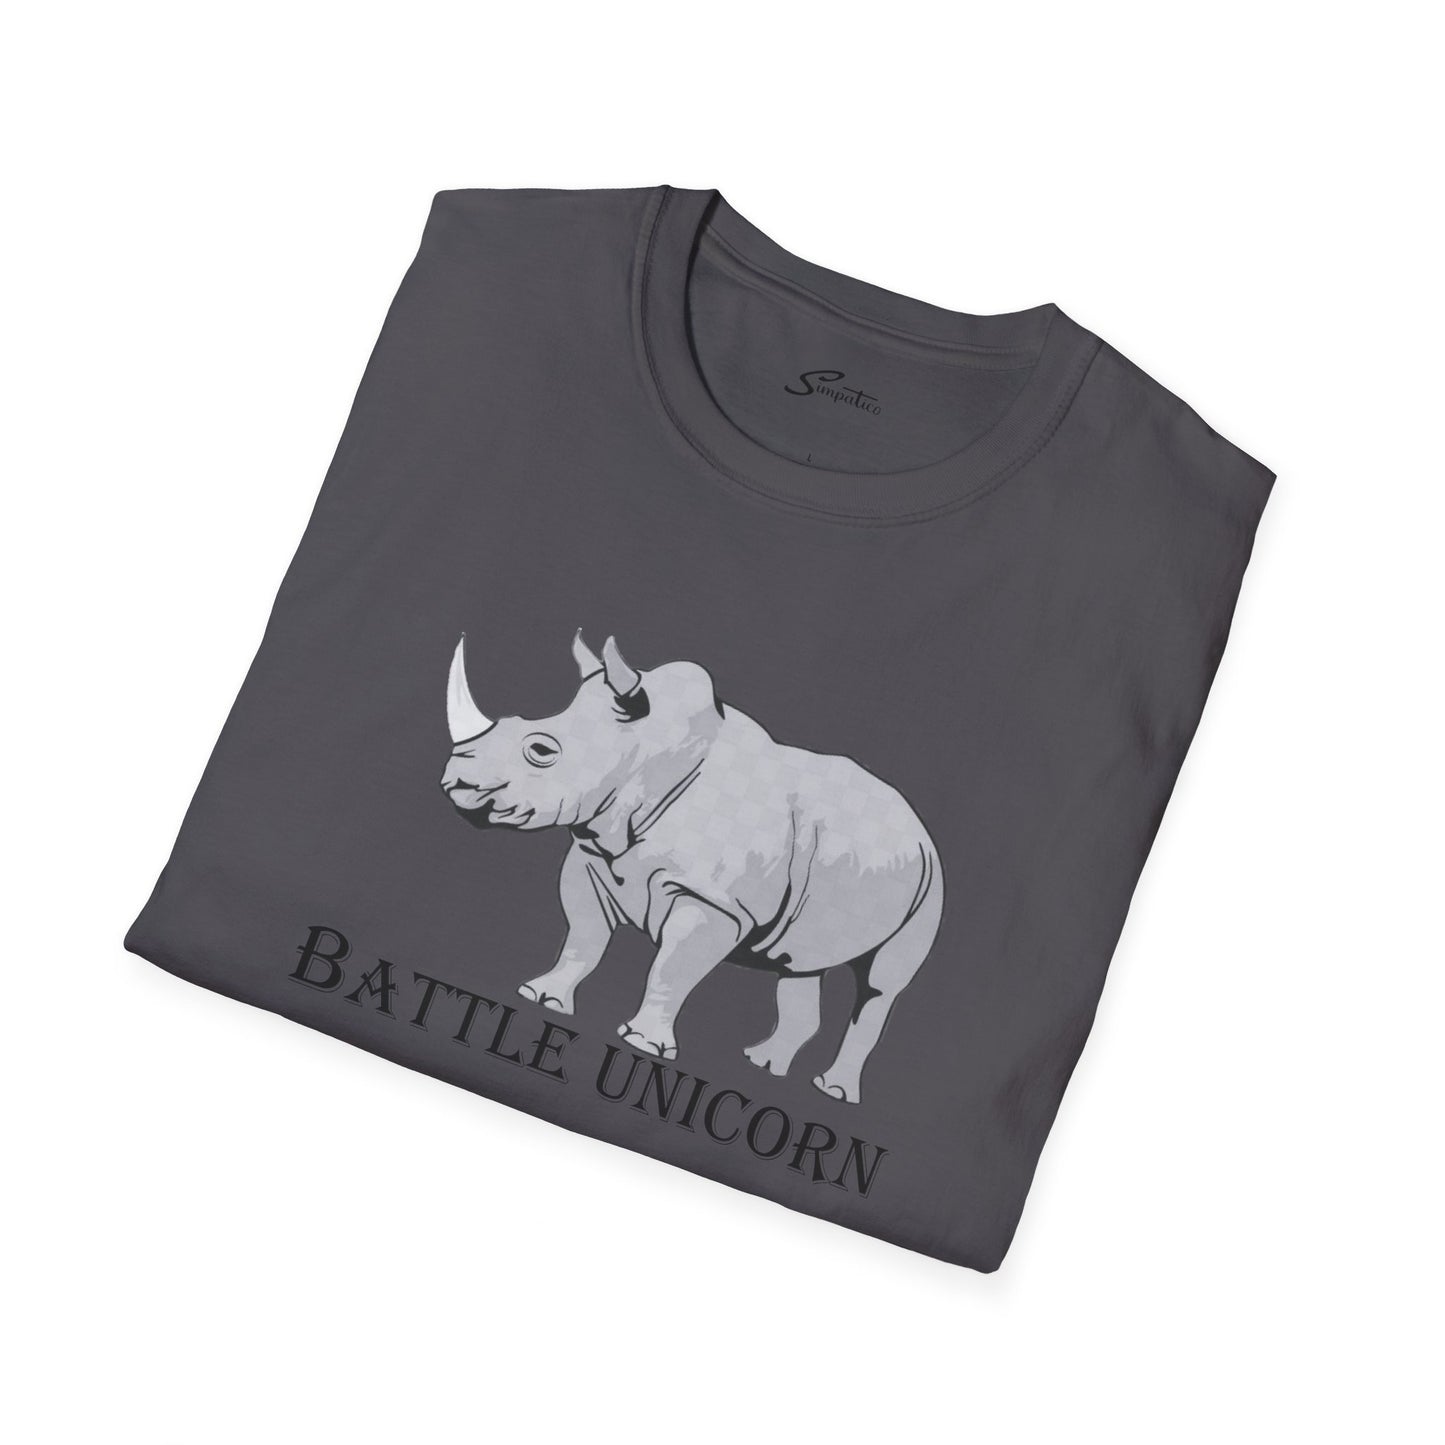 Battle Unicorn T-Shirt